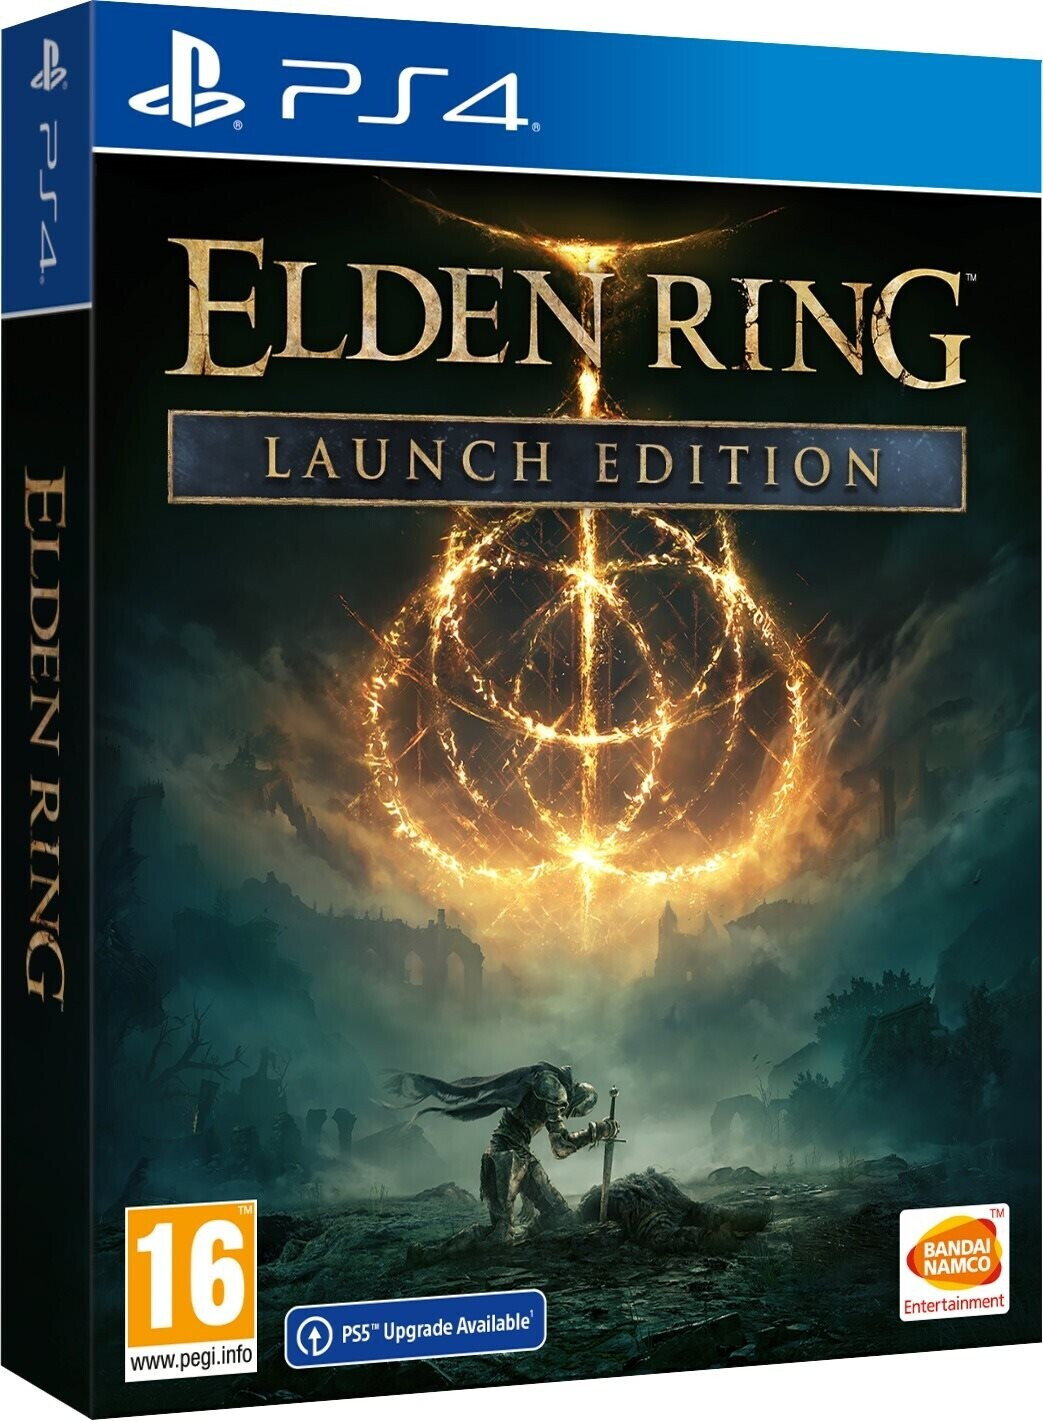 Photos - Game Ring Bandai Namco Entertainment Elden : Launch Edition  (PS4)